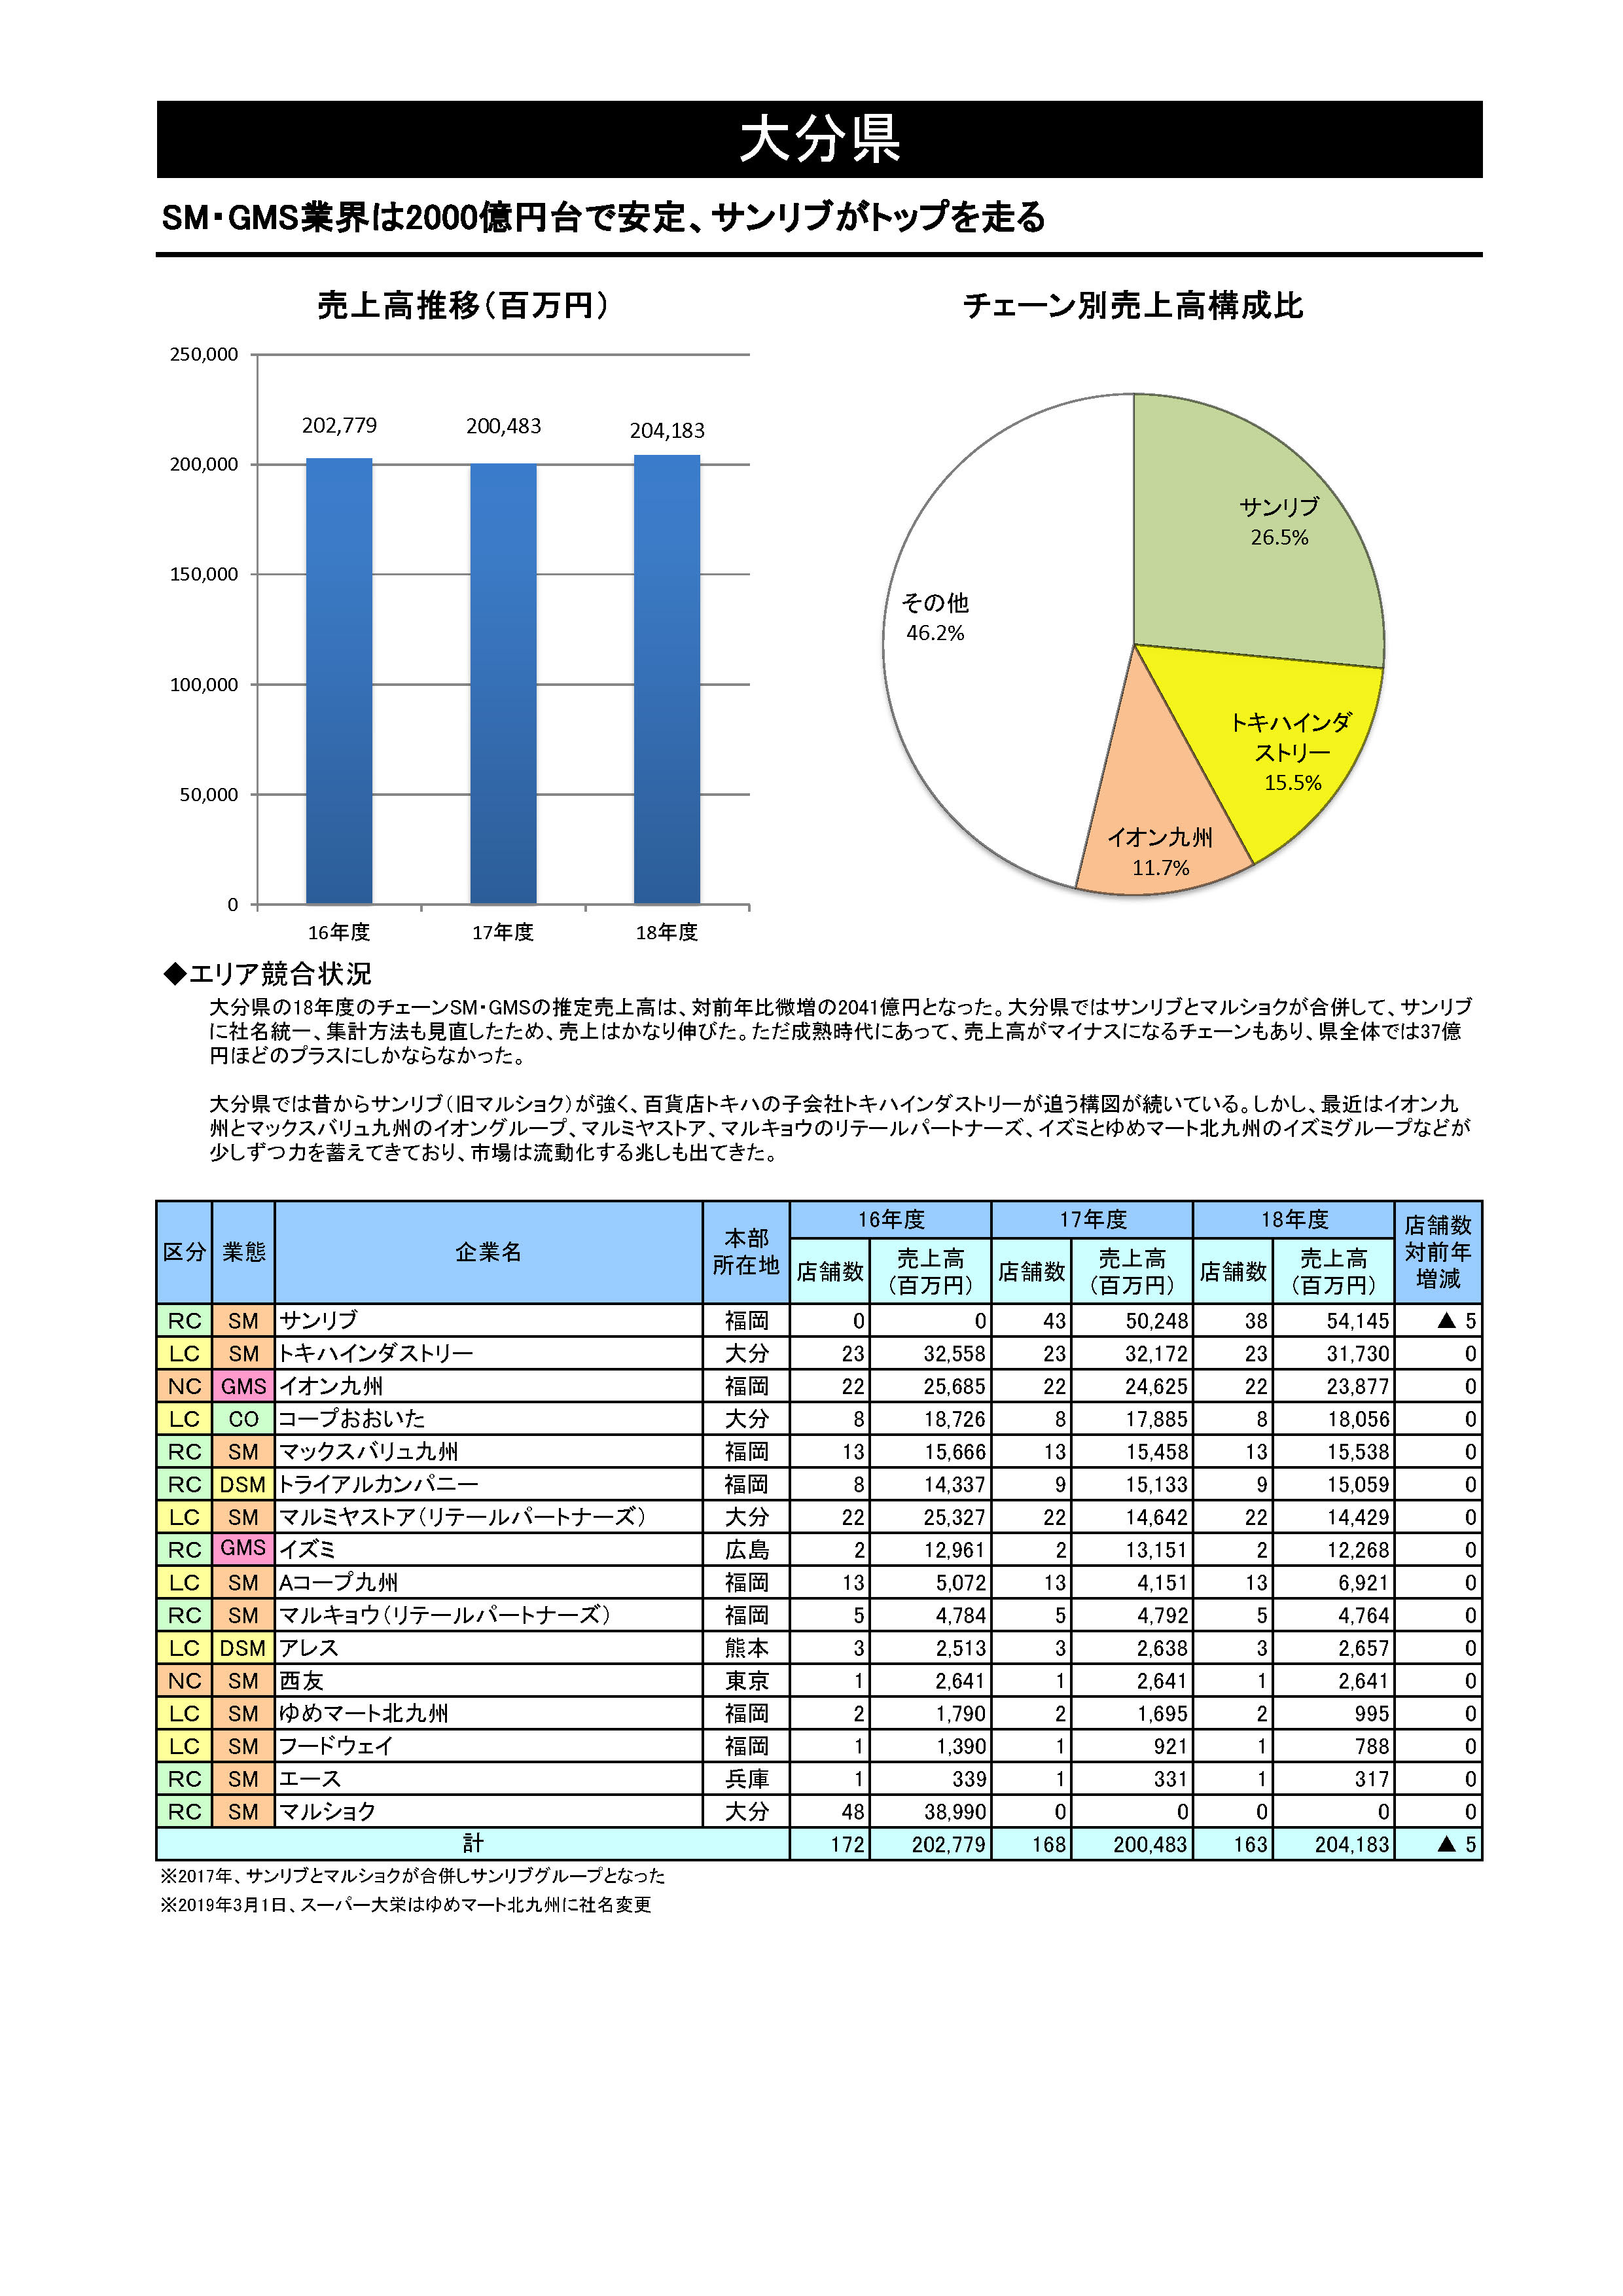 SM・GMSチェーン都道府県別勢力図 2020【Excel形式】